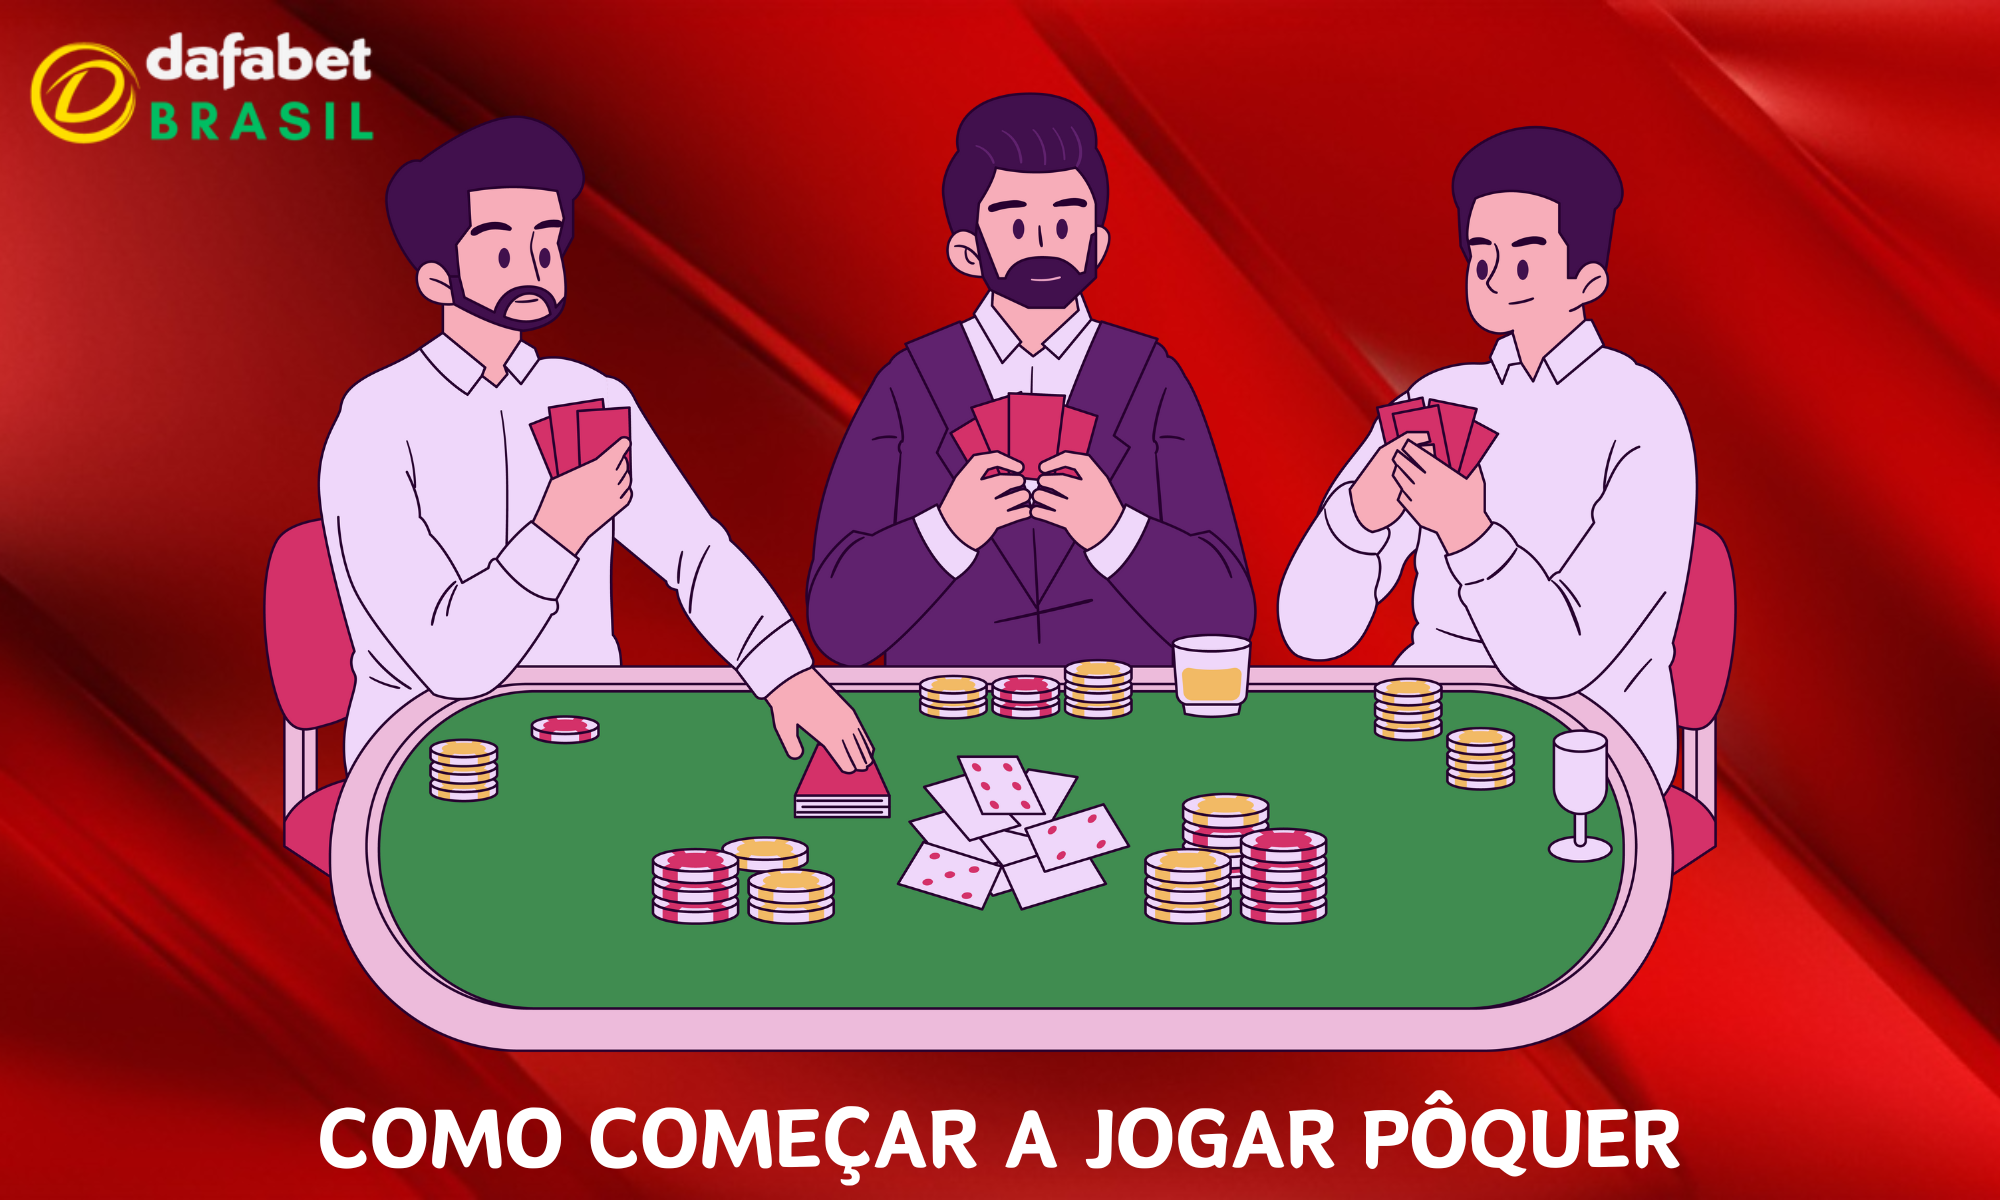 Guia passo a passo para começar a jogar pôquer na Dafabet